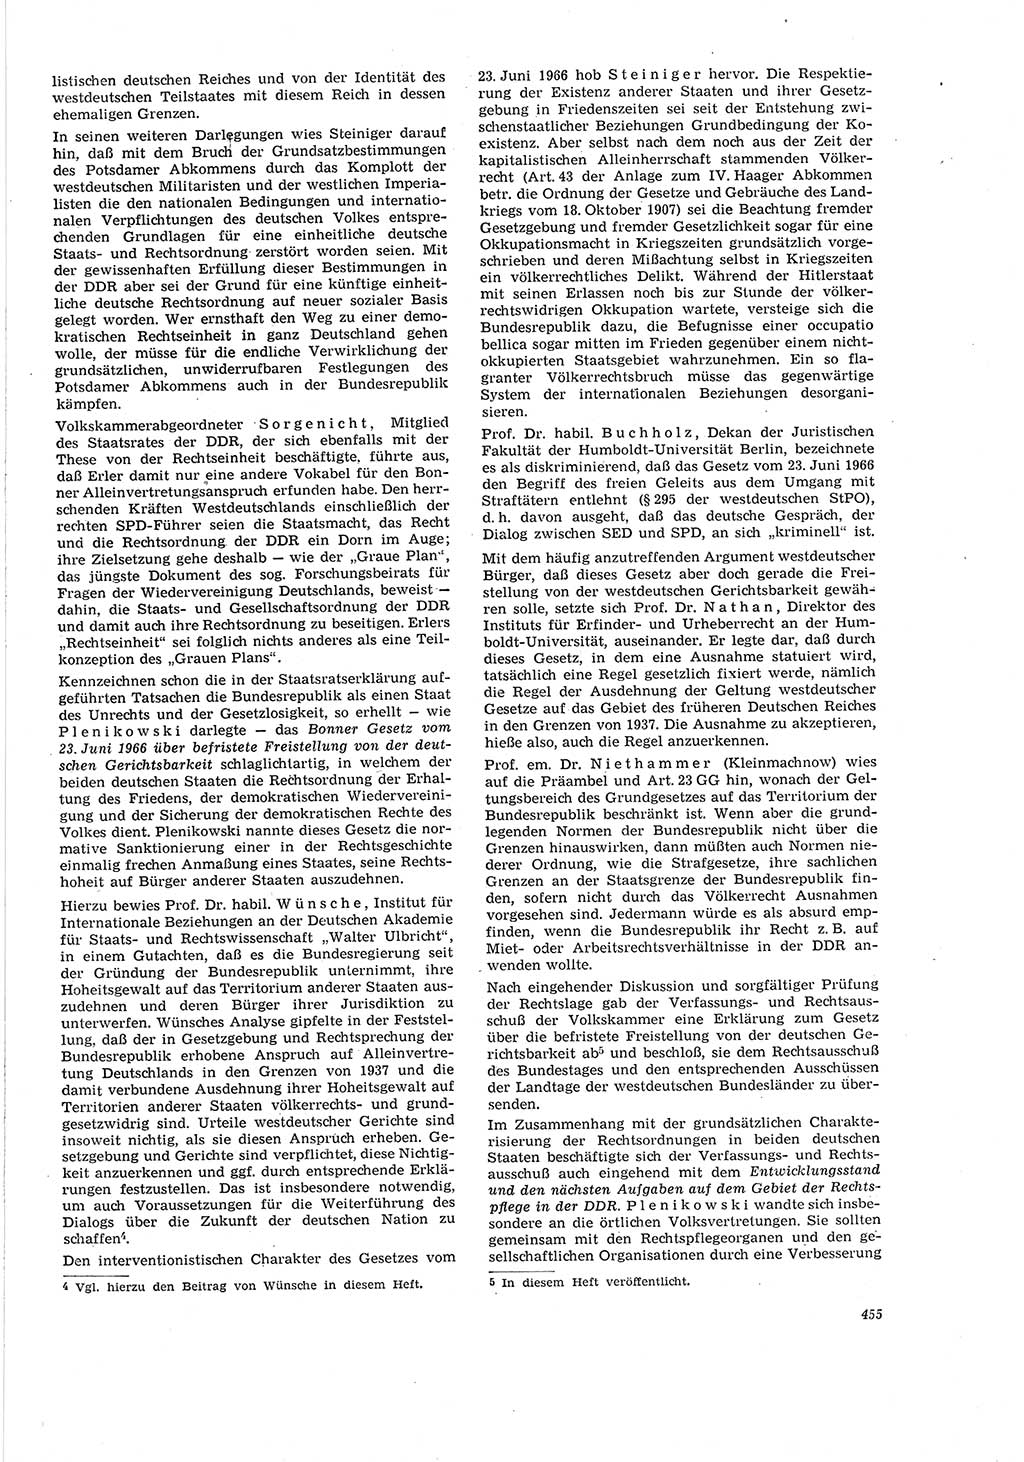 Neue Justiz (NJ), Zeitschrift für Recht und Rechtswissenschaft [Deutsche Demokratische Republik (DDR)], 20. Jahrgang 1966, Seite 455 (NJ DDR 1966, S. 455)